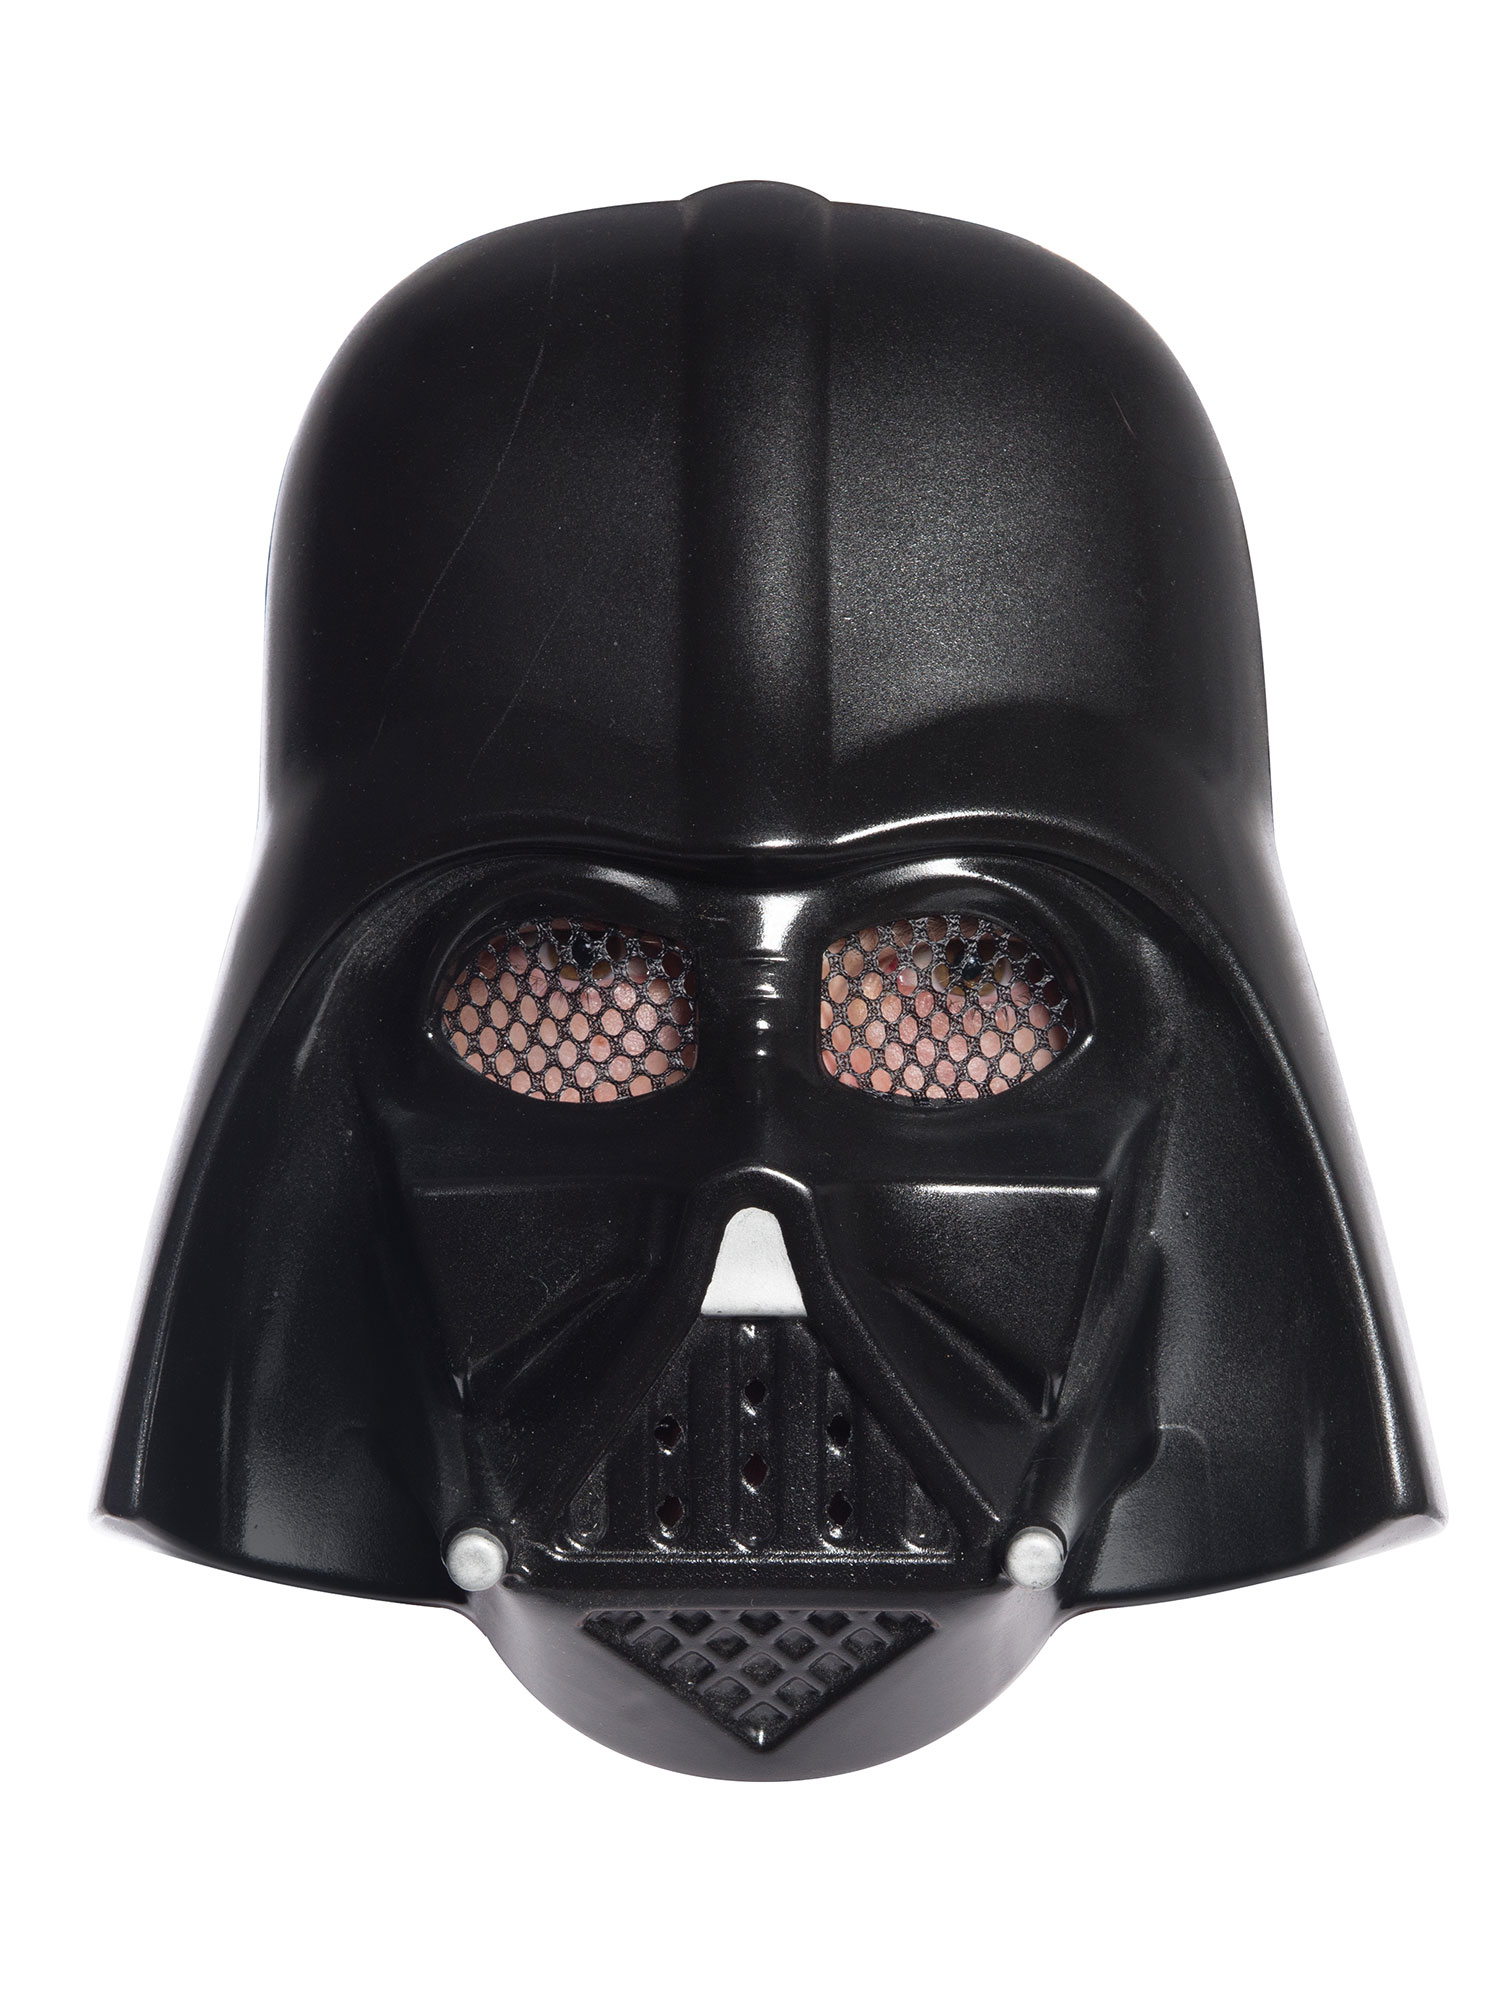 Rubies 3496x Star Wars Classic Sammel Maske von Ben Cooper - Vintage - Darth Vader, Stormtrooper, C-3PO